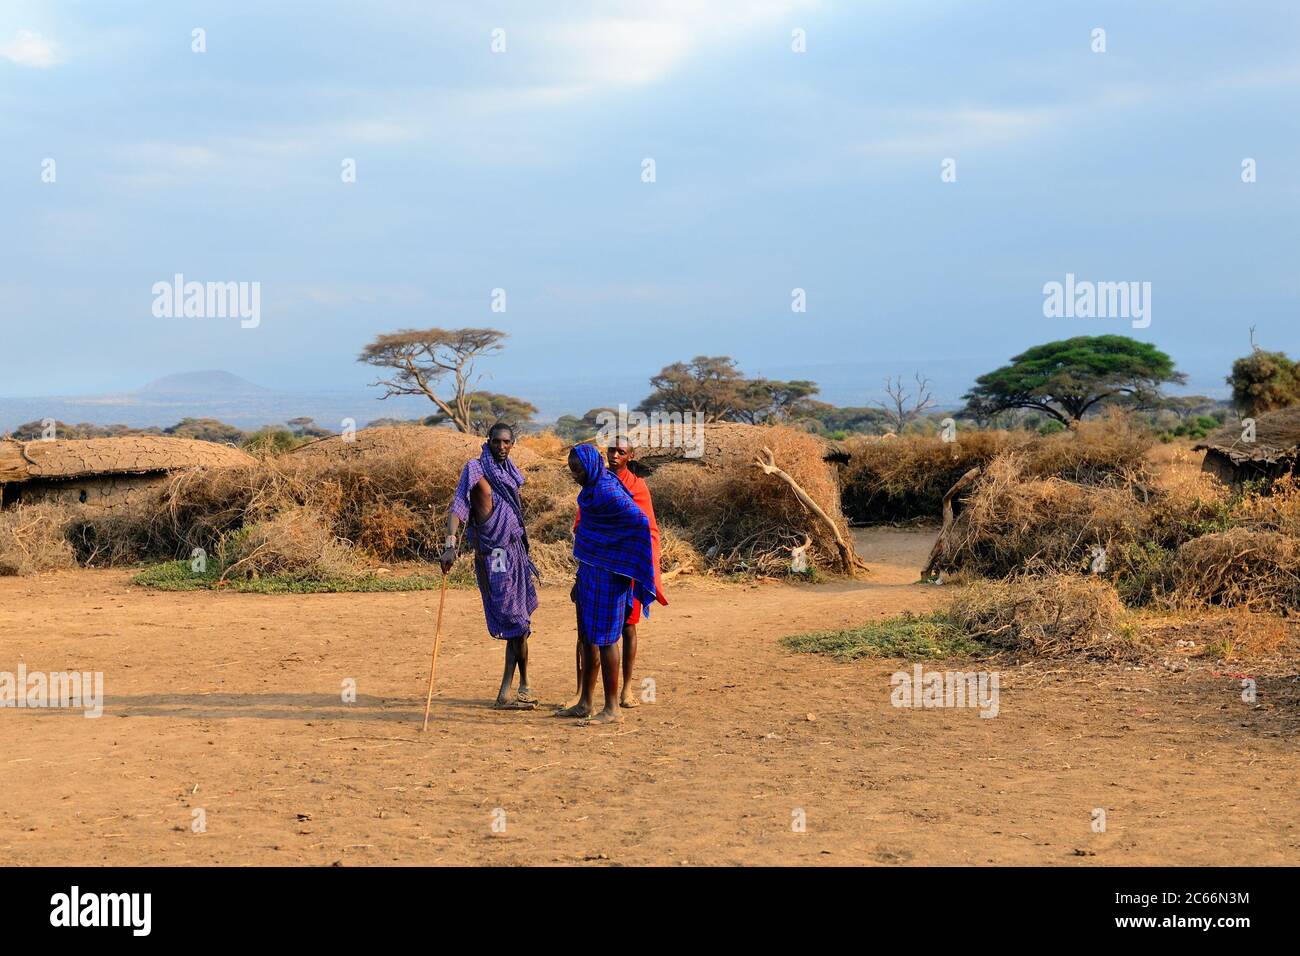 AMBOSELI, KENYA - 23 AOÛT 2010 : des Massai non identifiés avec des bâtons de bois qui parlent de quelque chose au Kenya. Les Massai sont un gro ethnique nilotique Banque D'Images